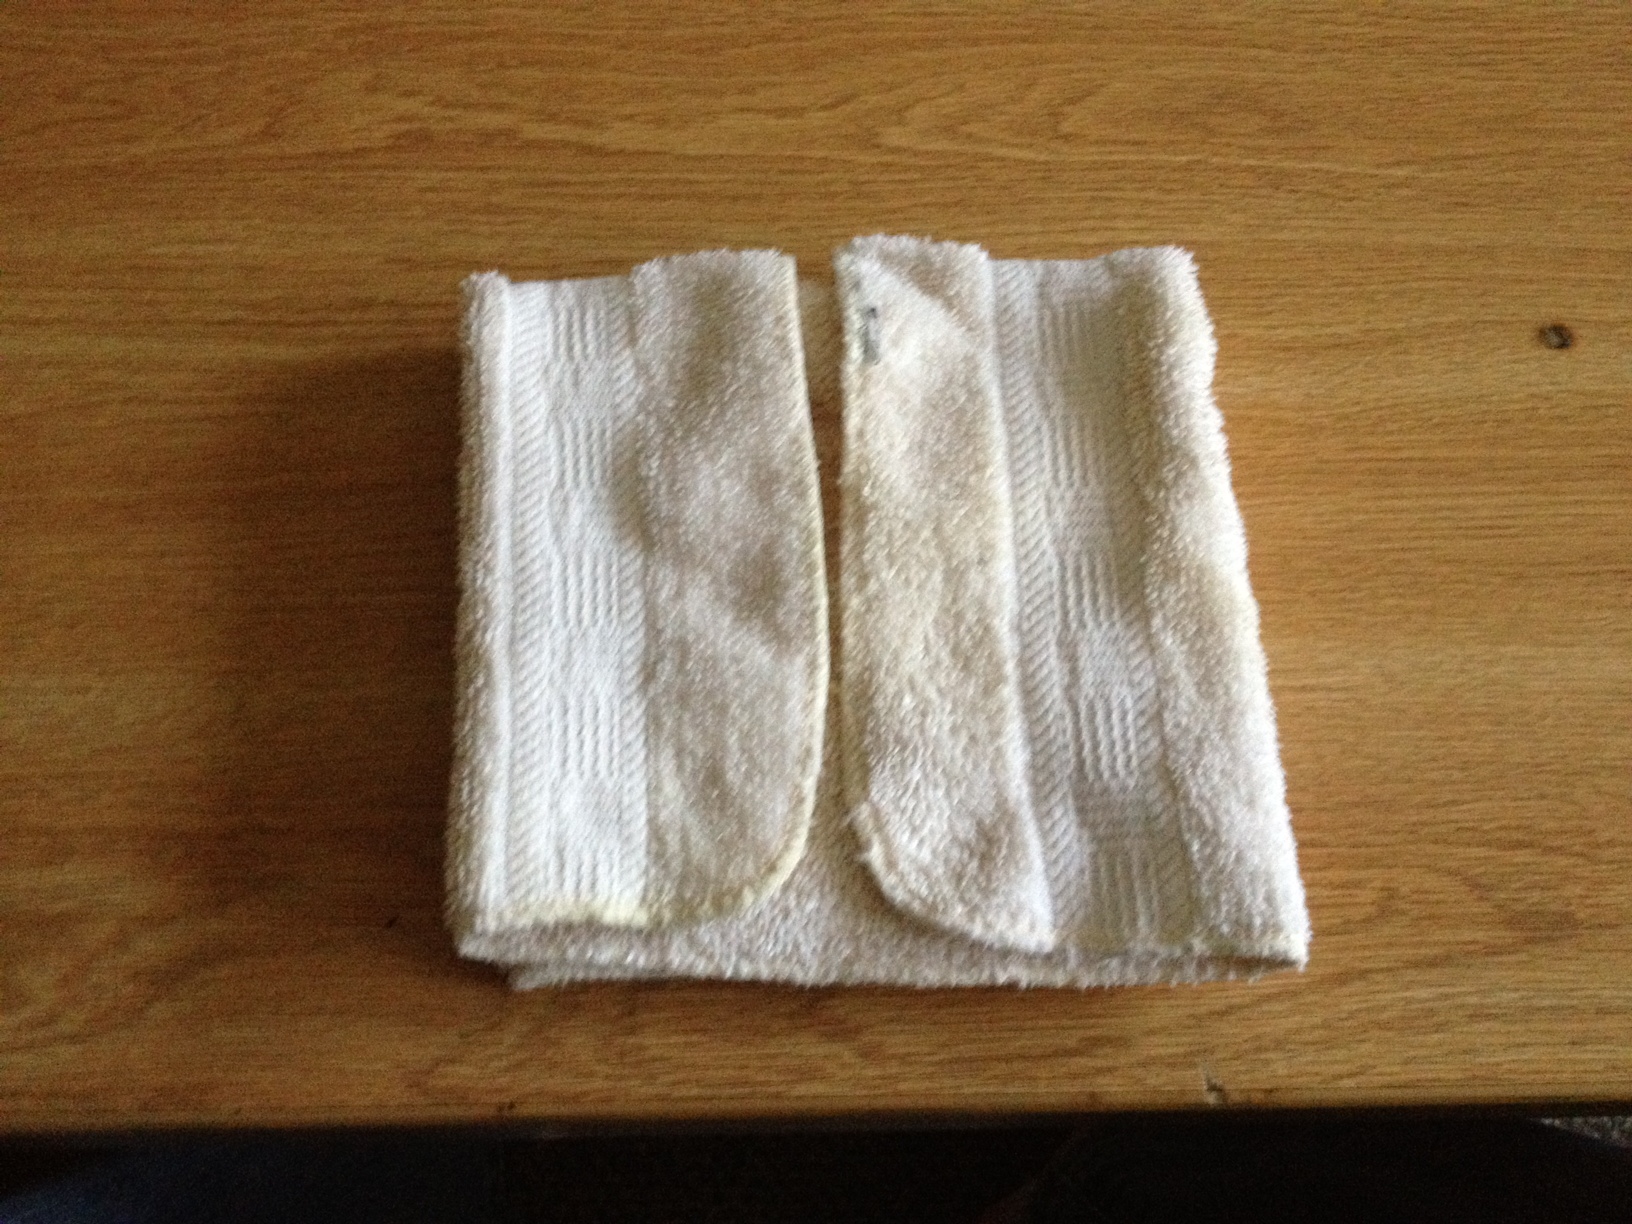 Fold the napkin in half